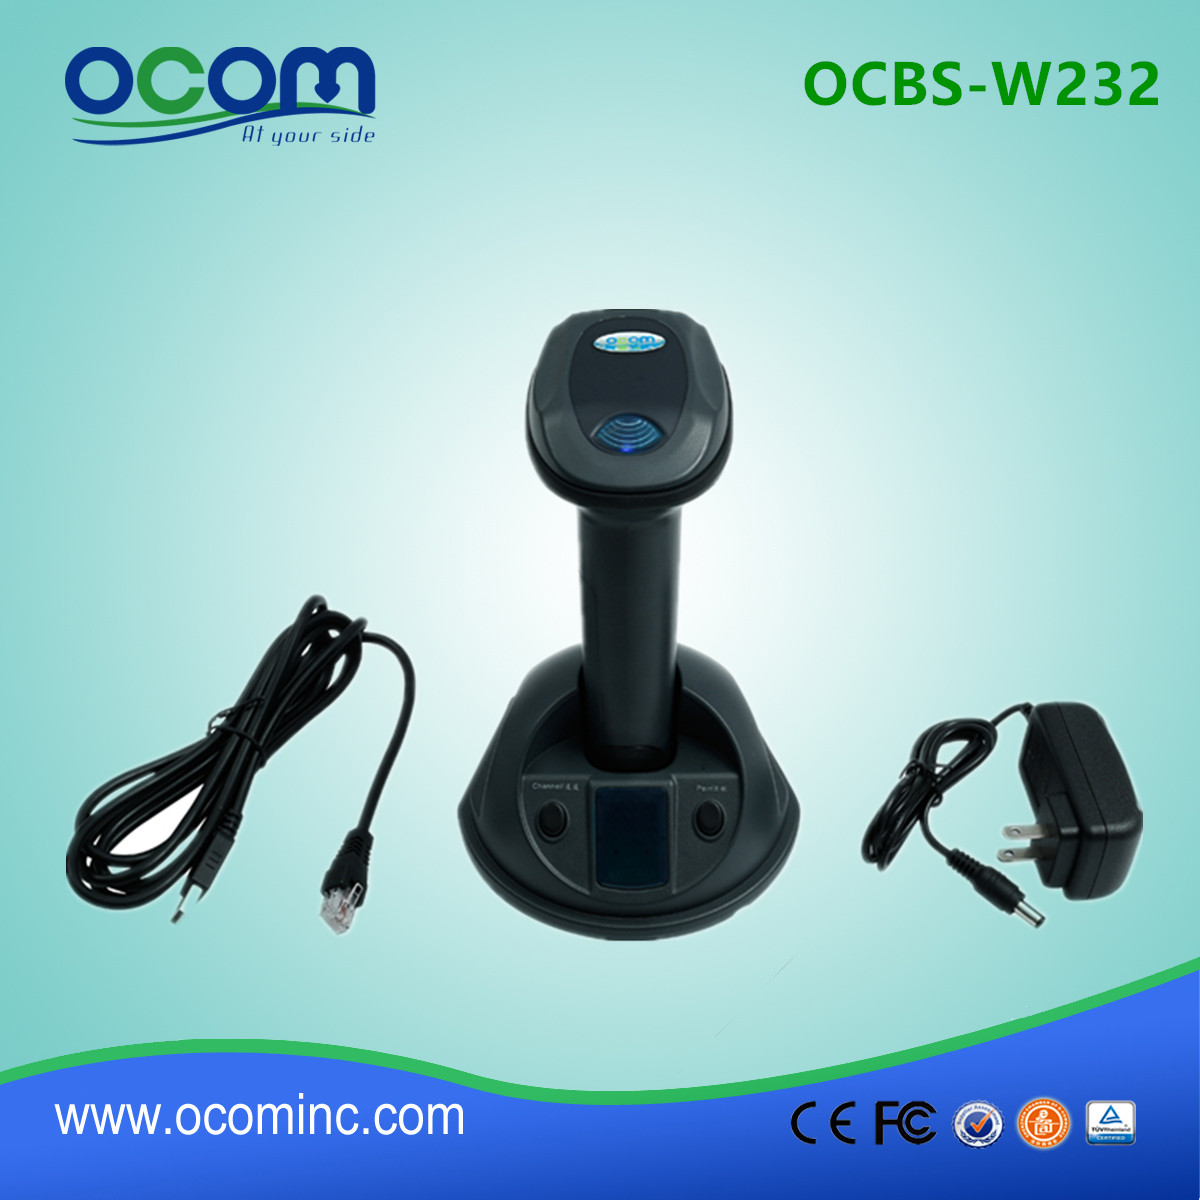 (OCBS-W232) Scanner de código de barras 2D sem fio com função Bluetooth e 433MHz